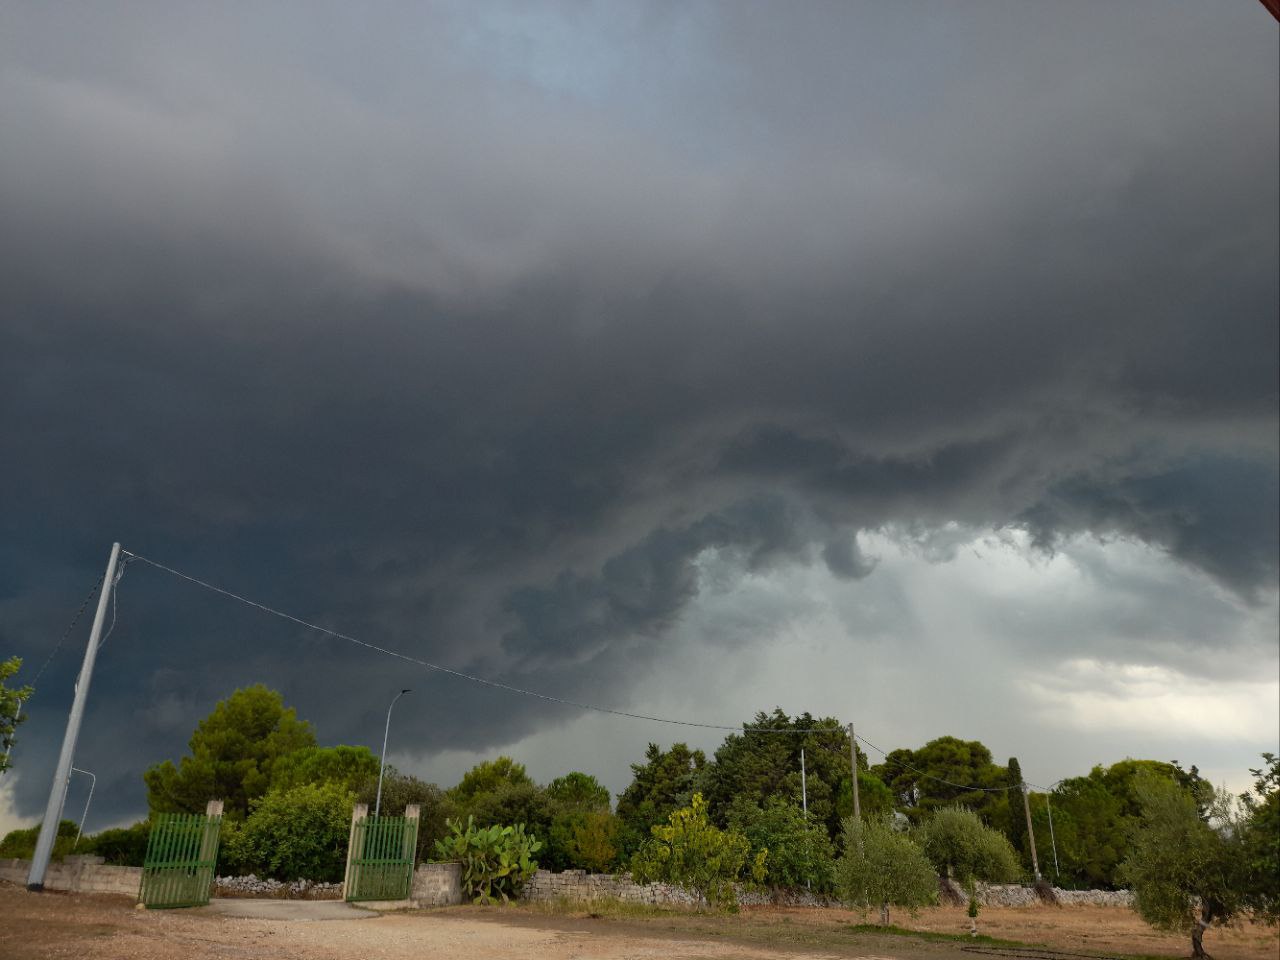 Sicilia: temporali e locali nubifragi sulle zone interne e sud-orientali.